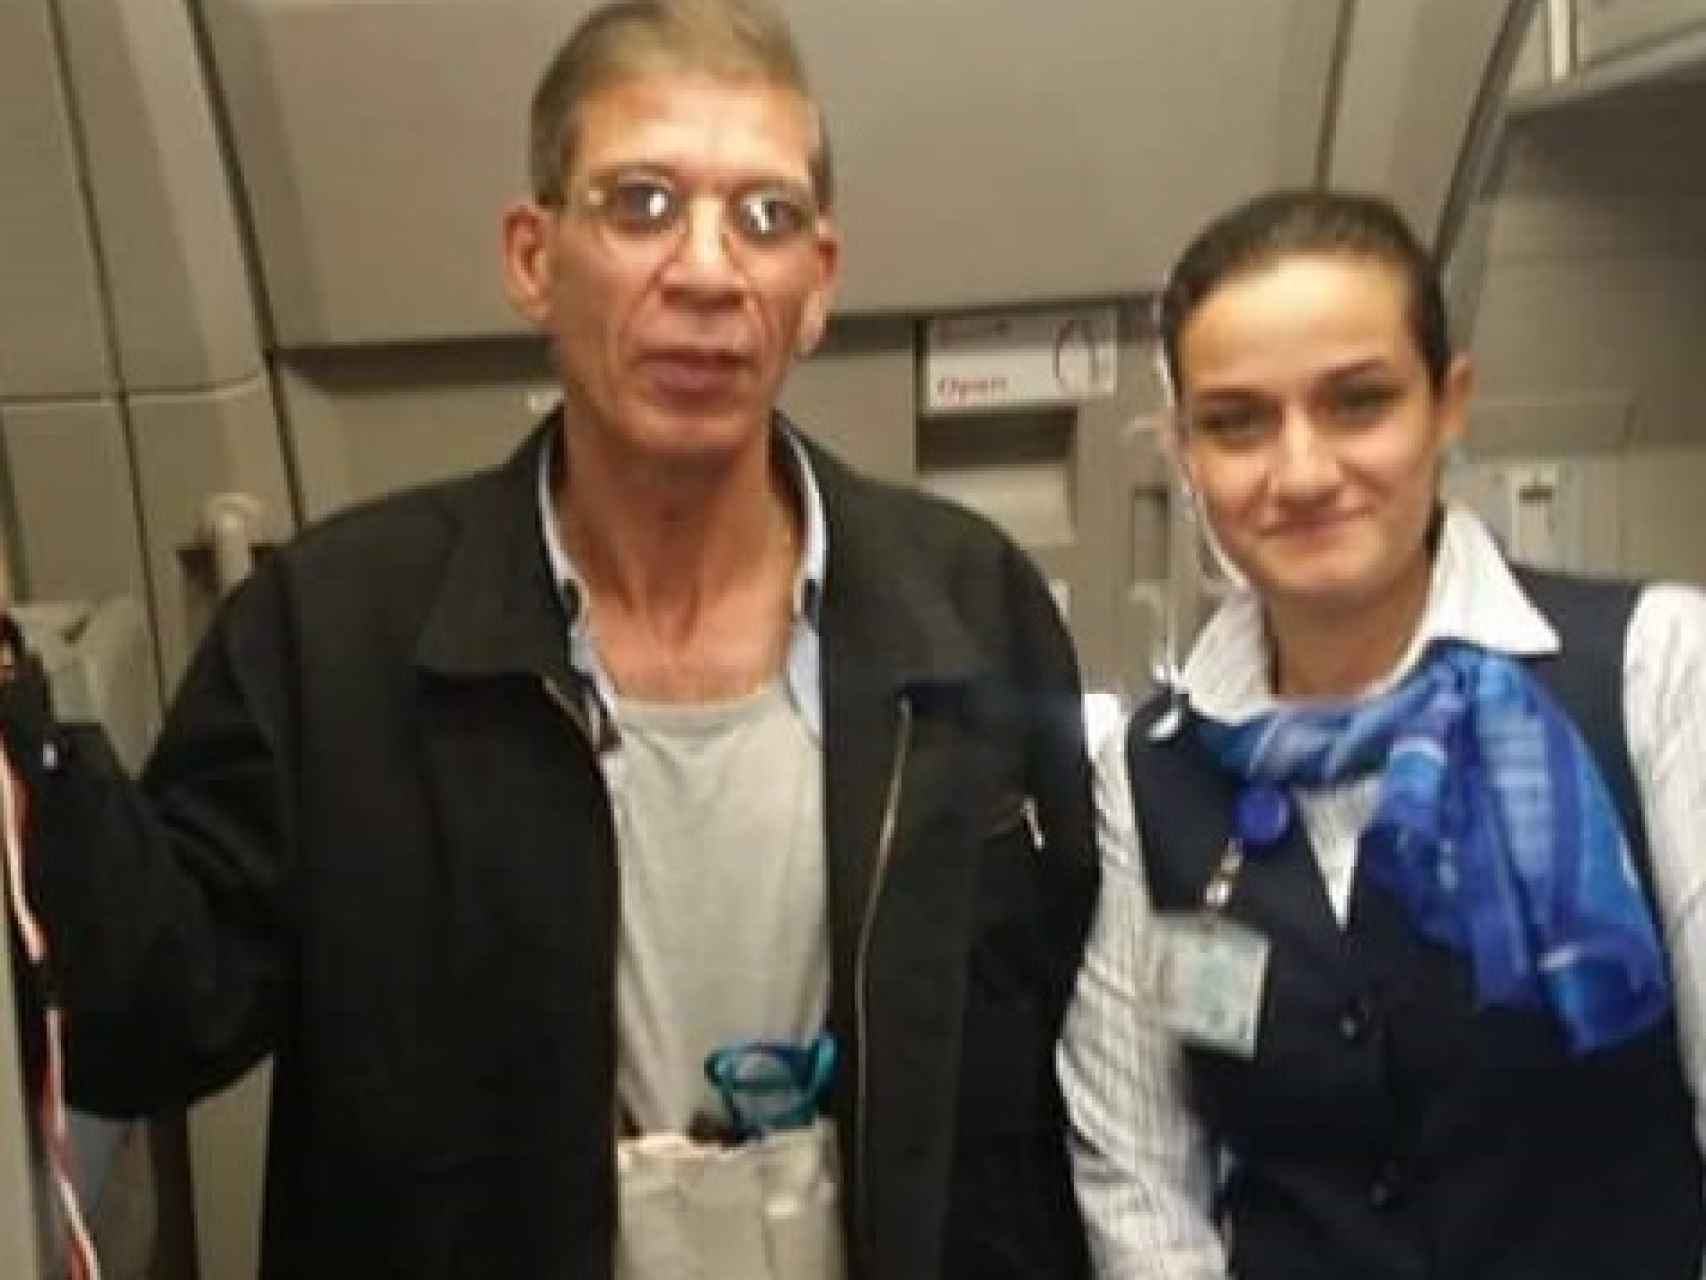 Otra rehén, en este caso una tripulante de vuelo, también posó junto al secuestrador de Egypt Air.